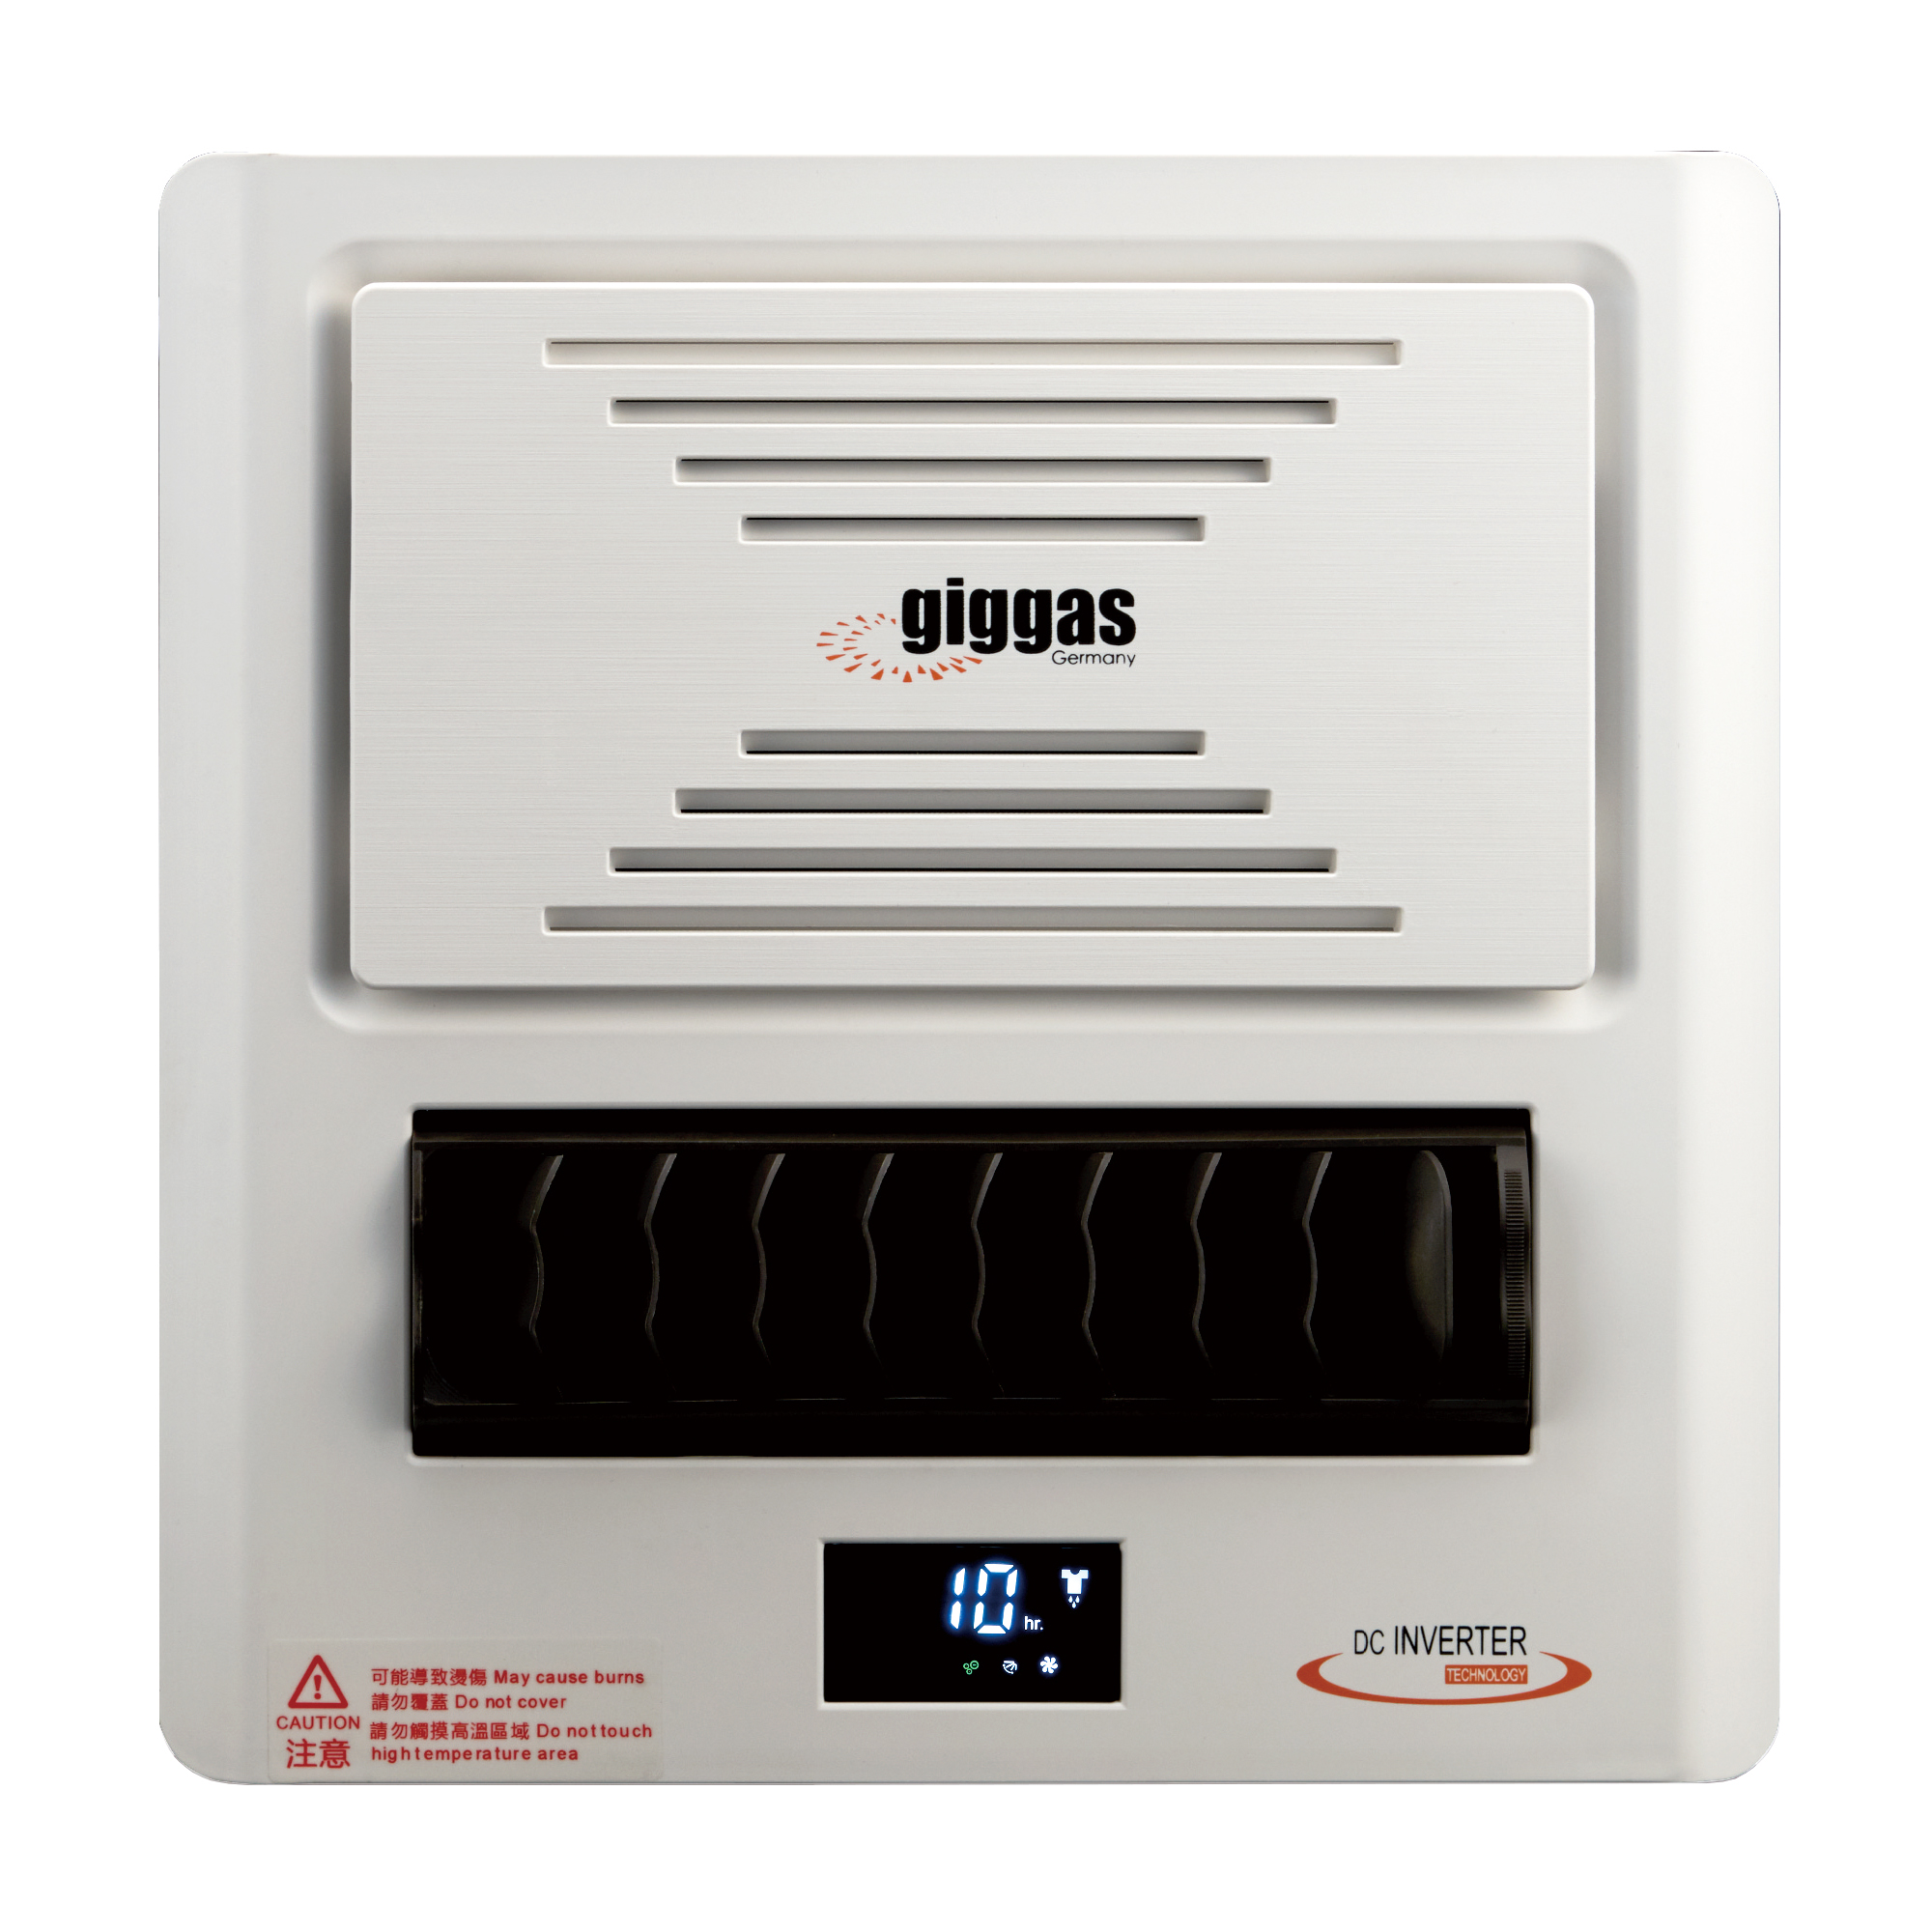 GIGGAS [i]浴室寶-窗口式 GR-88 1350W 